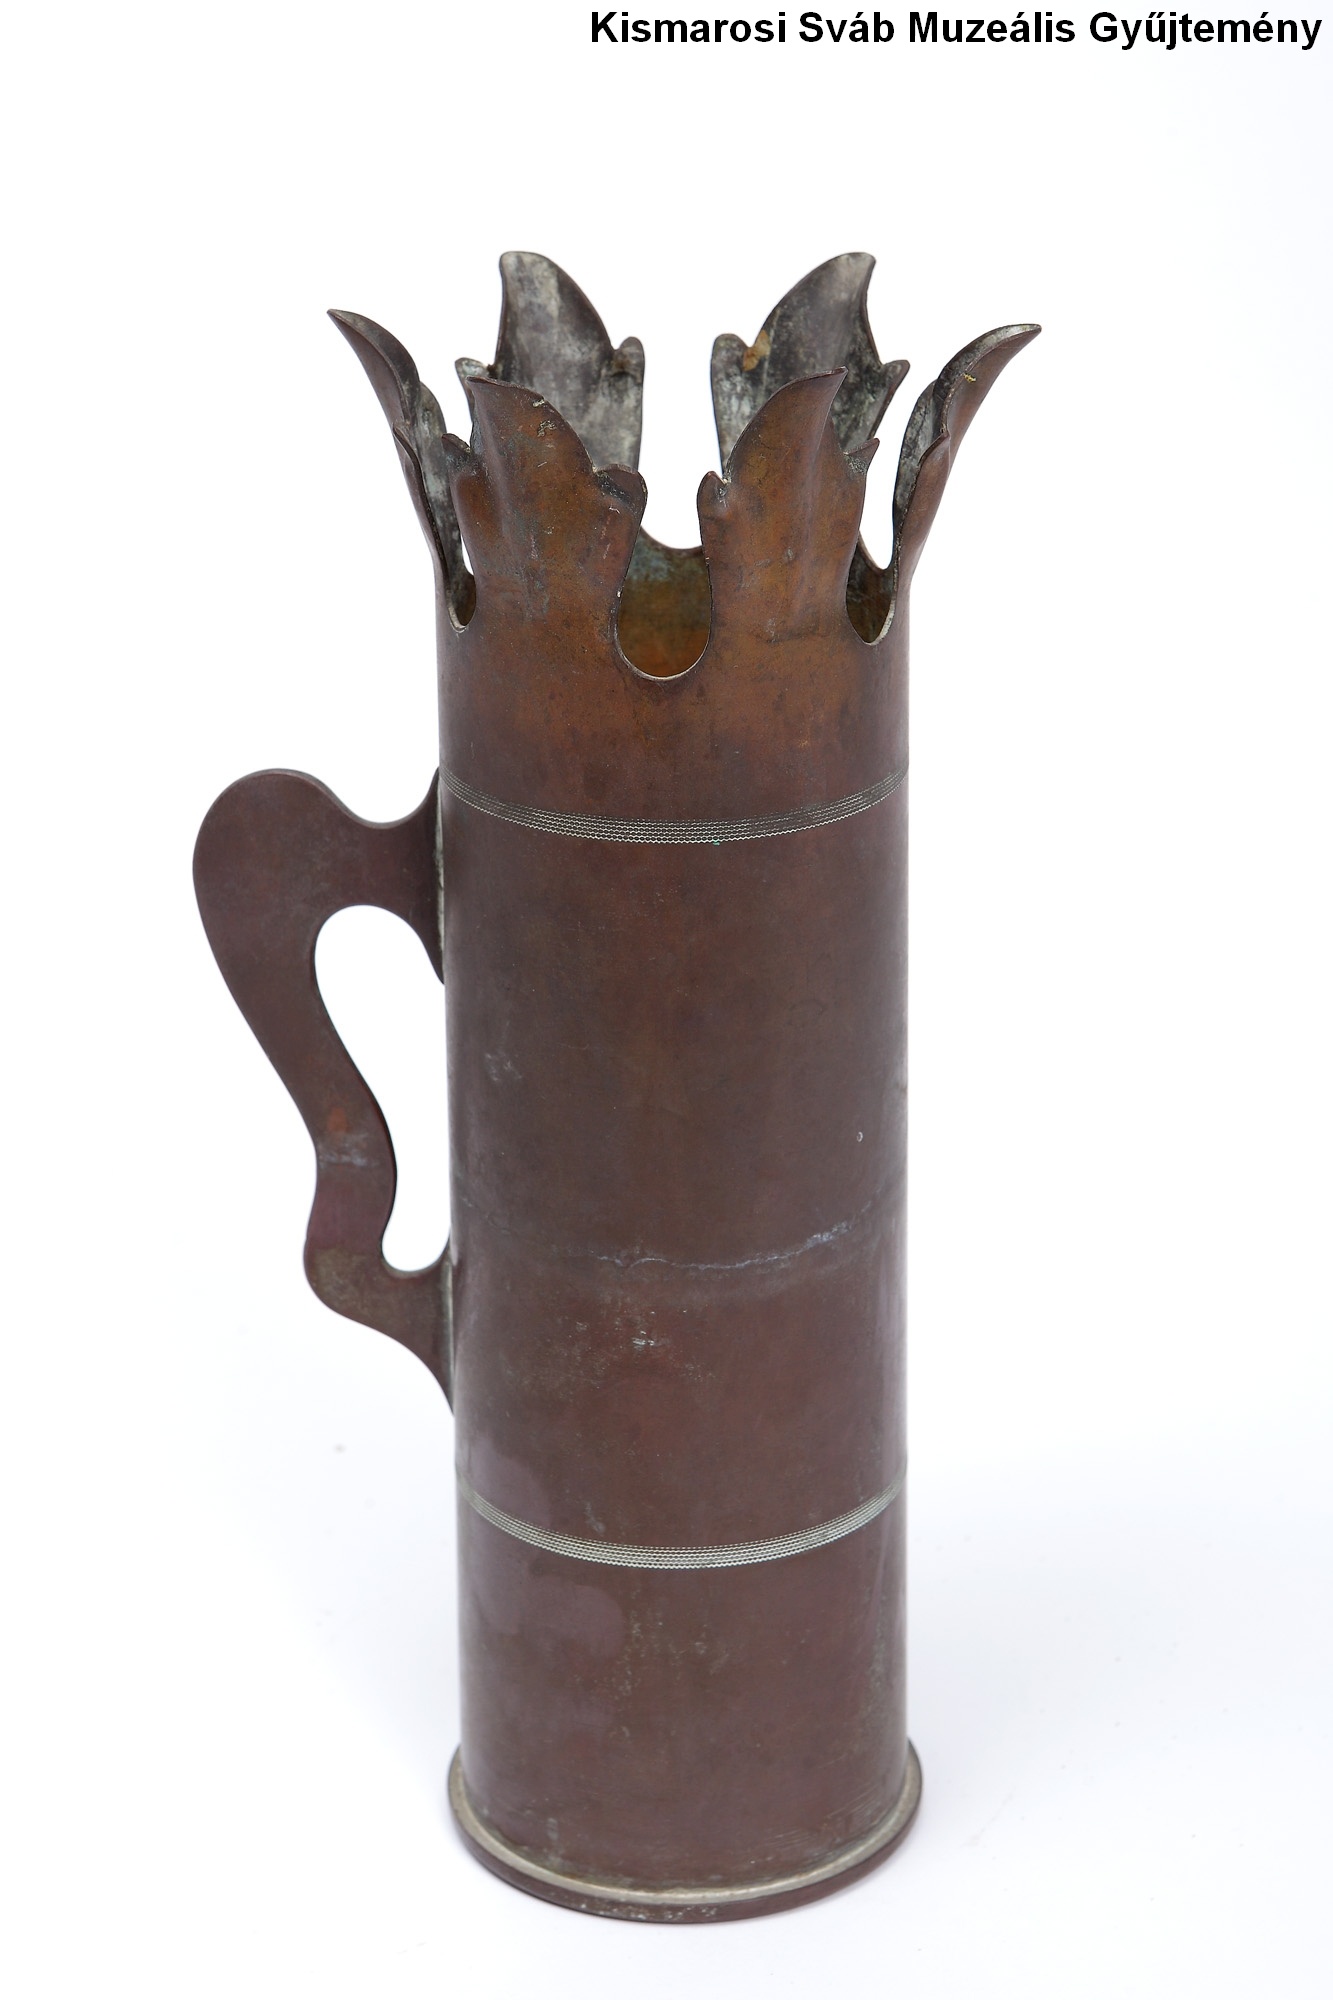 Töltényhüvely váza (Kismarosi Sváb Muzeális Gyűjtemény RR-F)